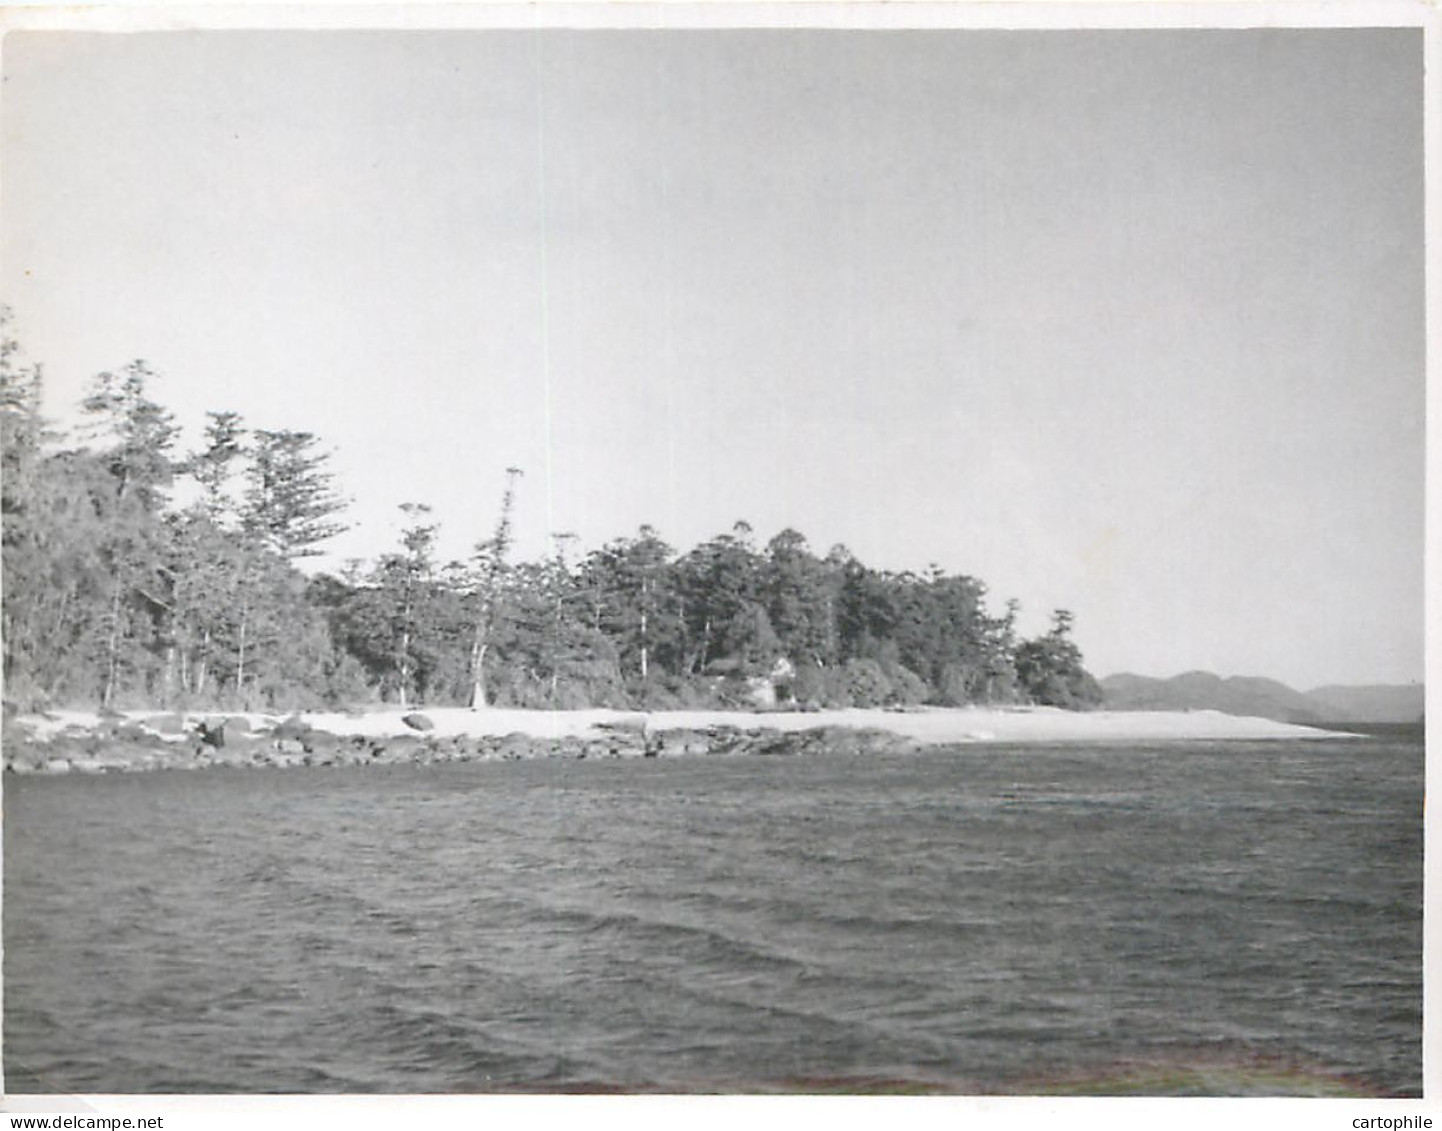 Australia - Lot de 10 photos de 1948 Barrière de Corail prise par Chollot Consulat Francais à Sydney NSW Bowen Peche